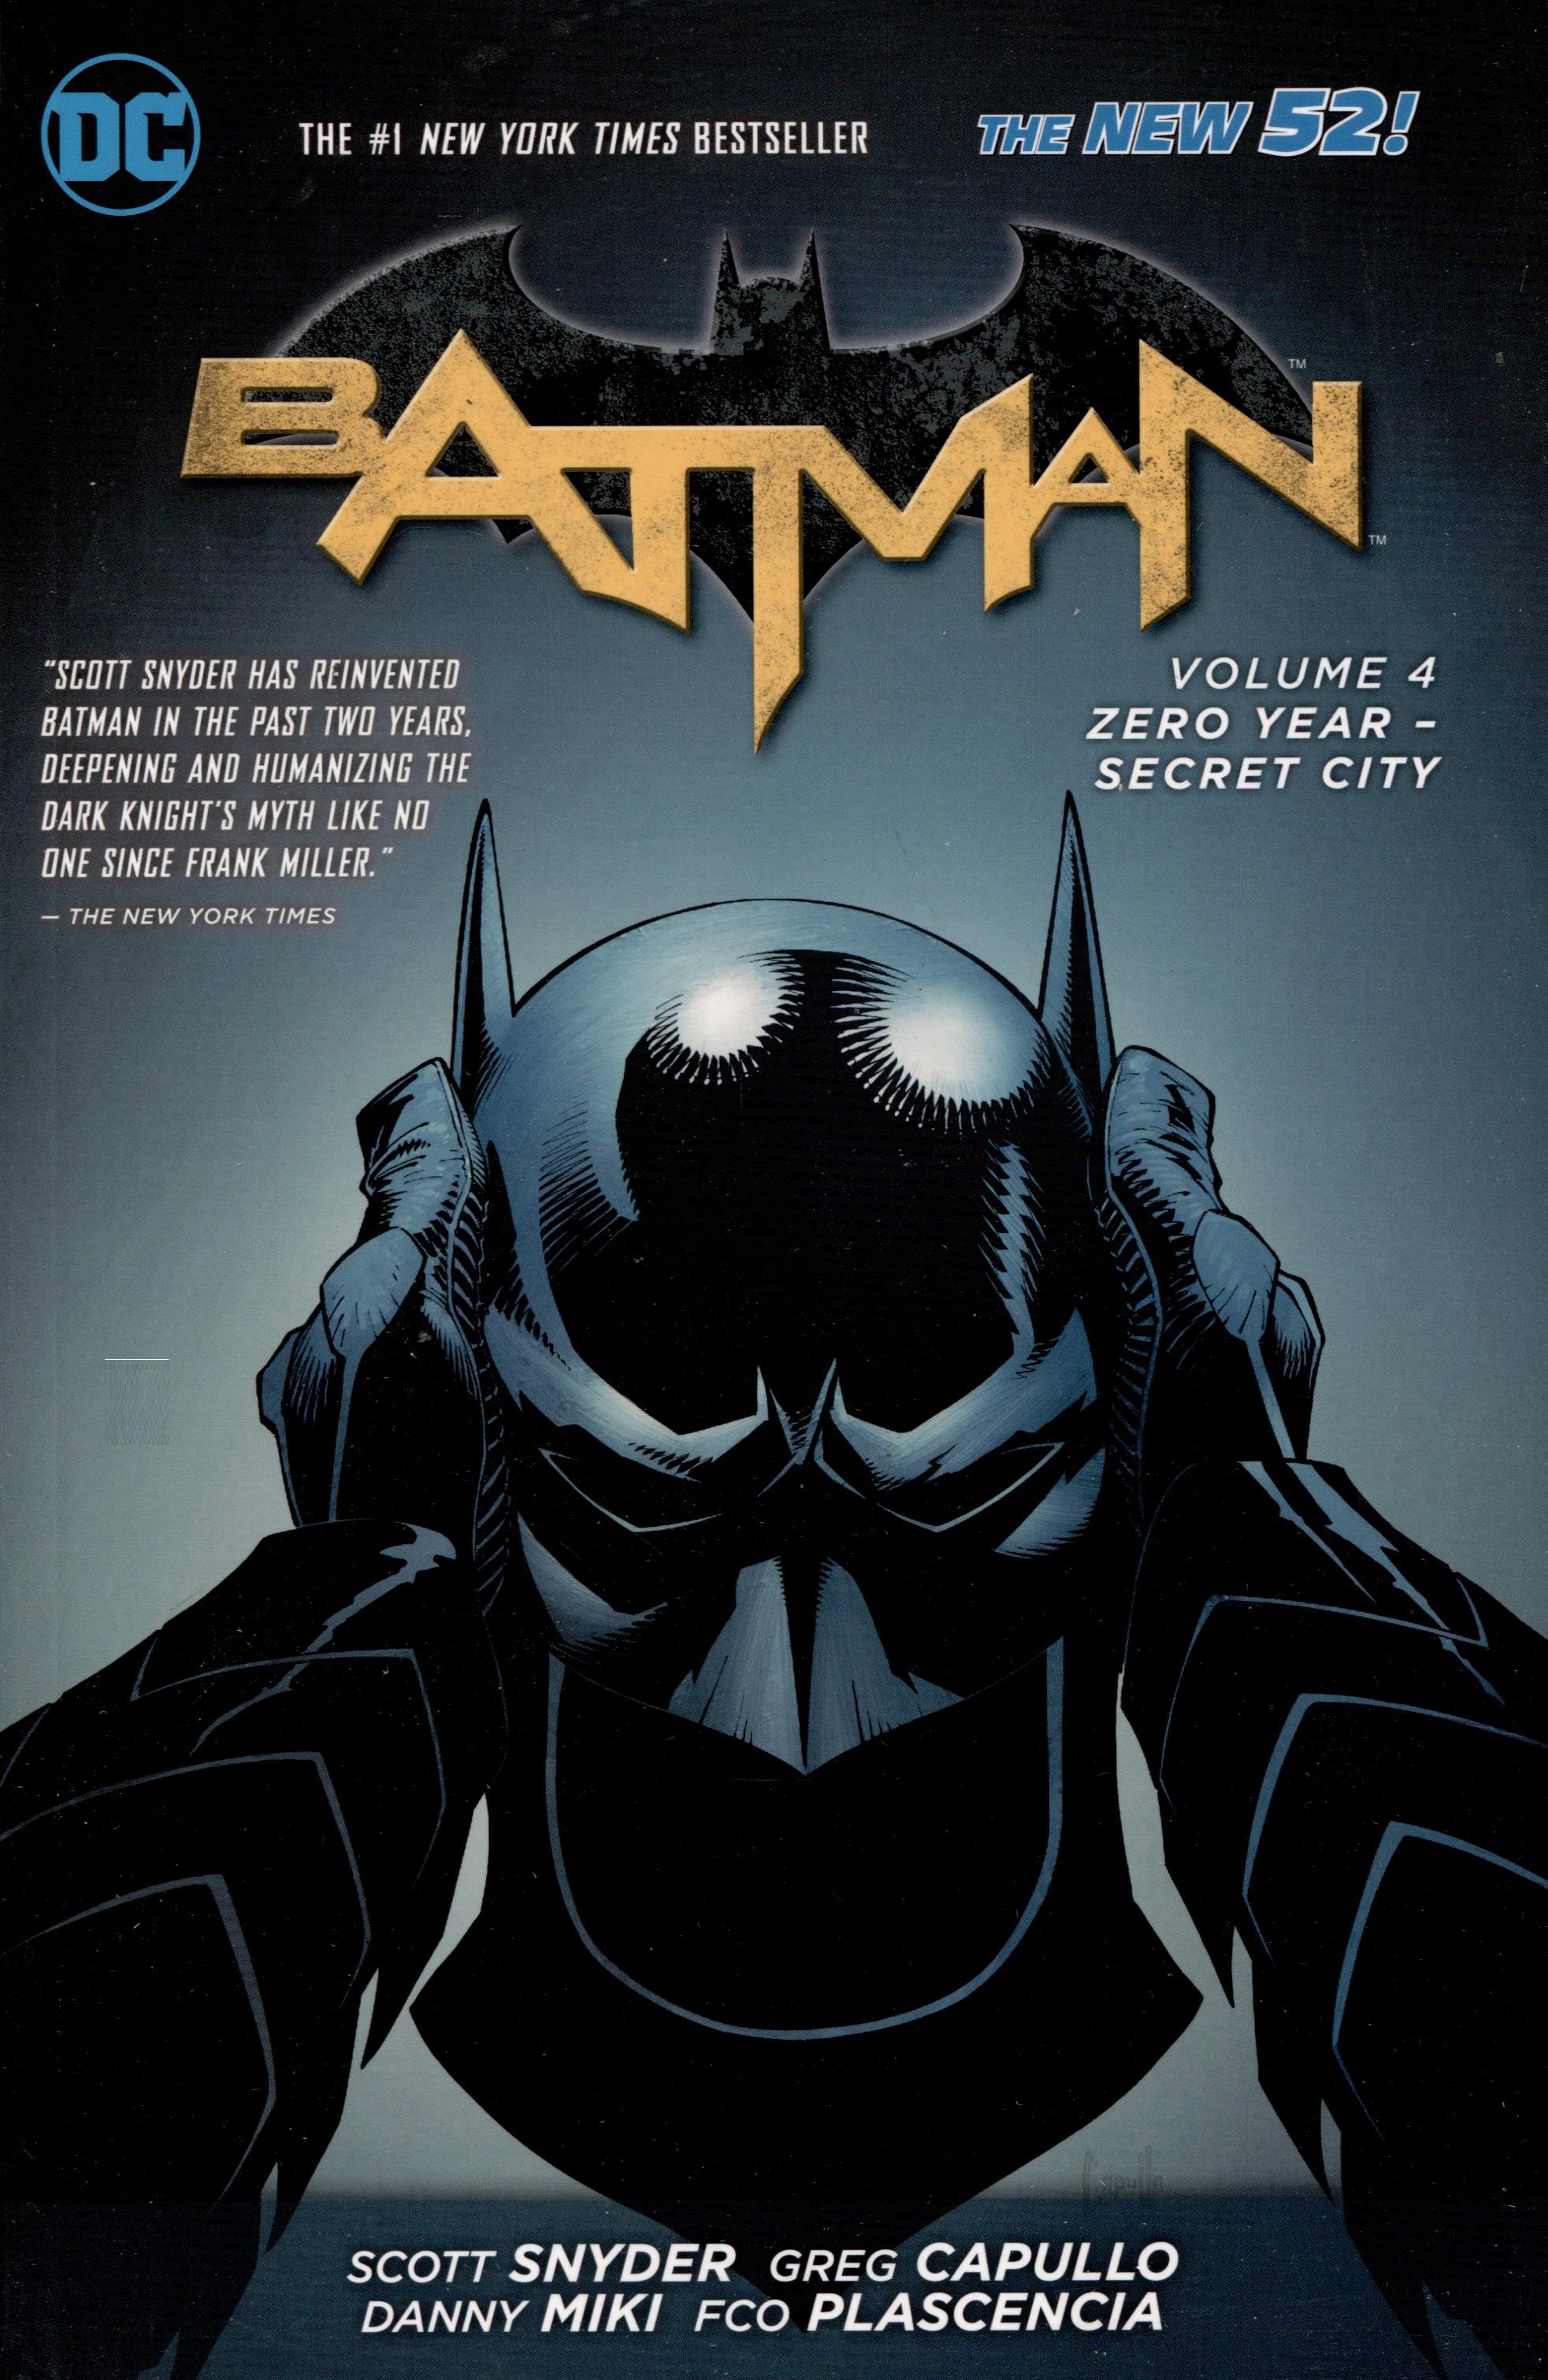 Batman. Volume 4 Zero Year - Secret City